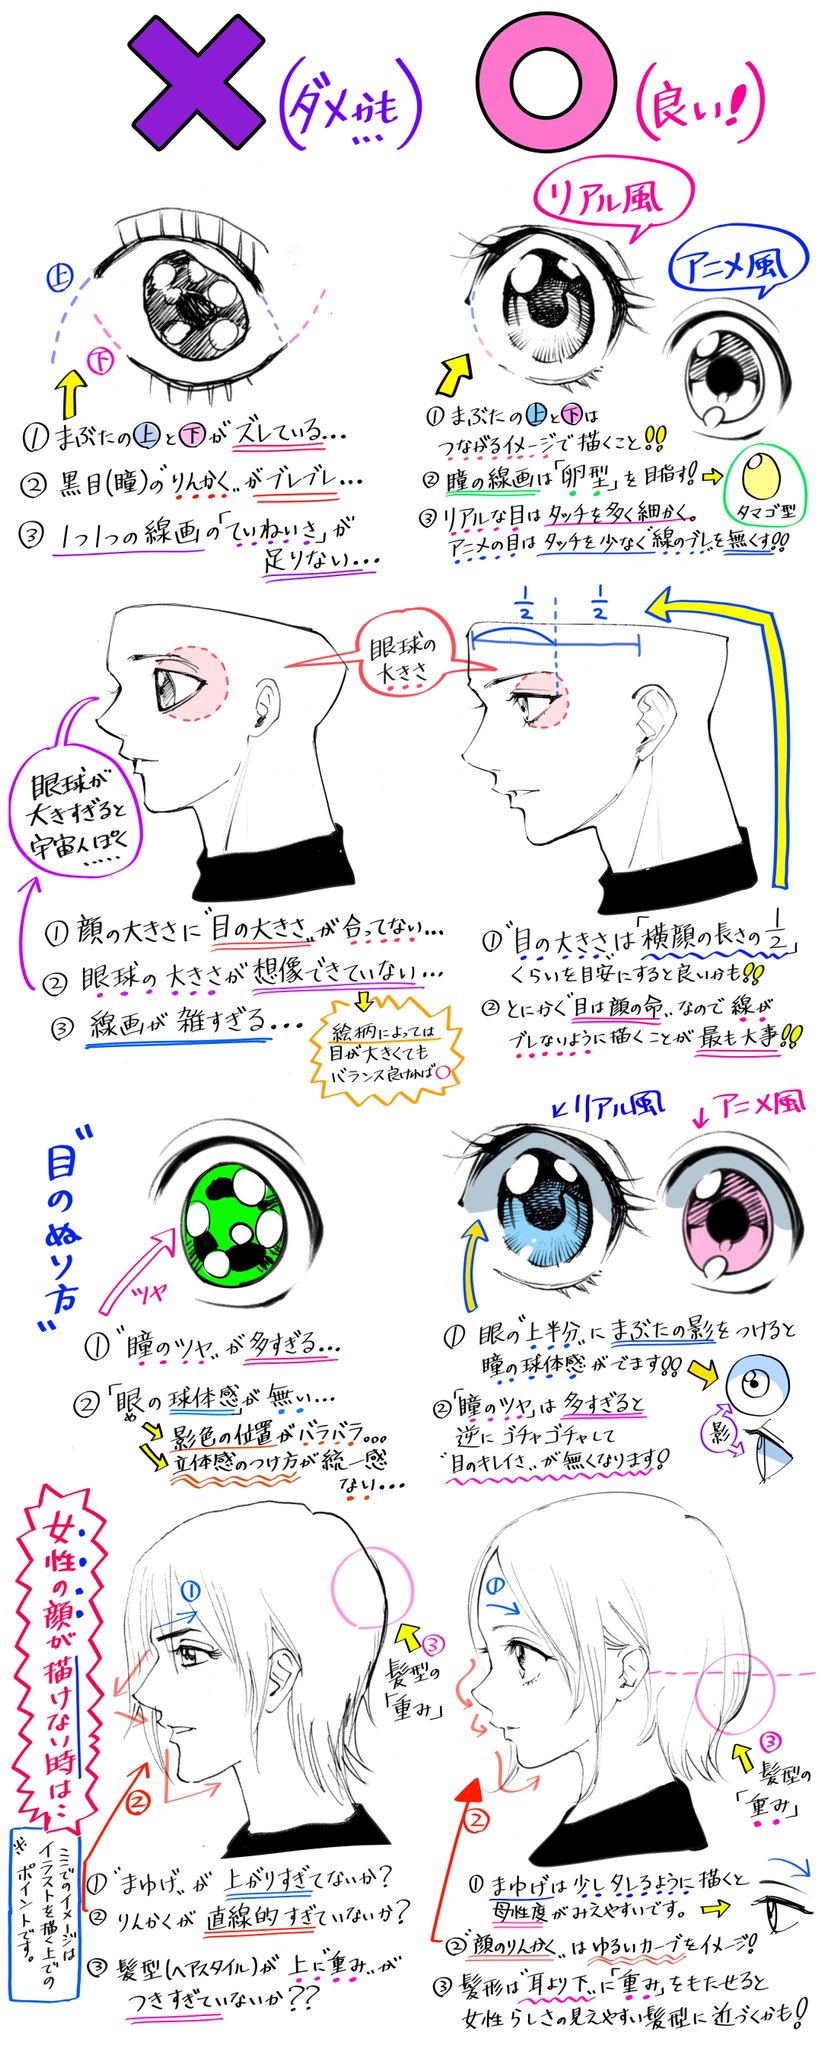 吉村拓也 イラスト講座 在 Twitter 上 眼の描き方 眼球の見え方と絵柄の描き分け が上達する ダメかも と 良いかも T Co Dvlvpdgaxx Twitter